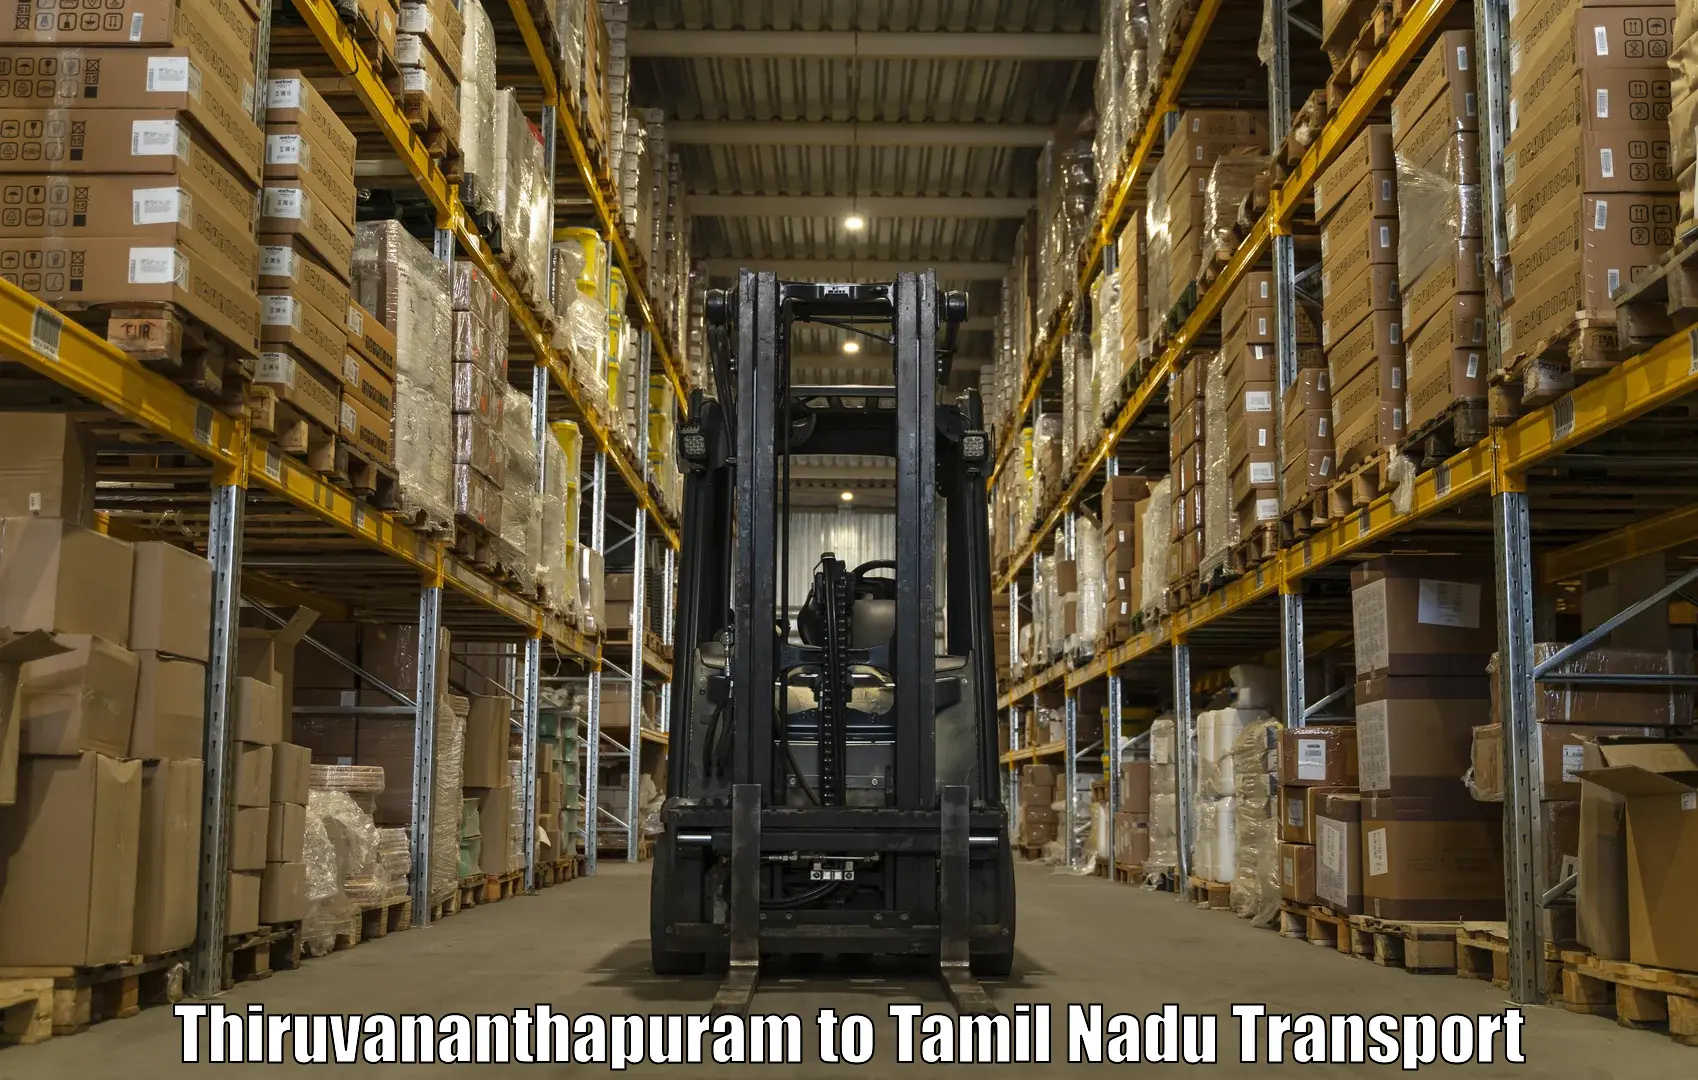 Express transport services Thiruvananthapuram to Karambakkudi